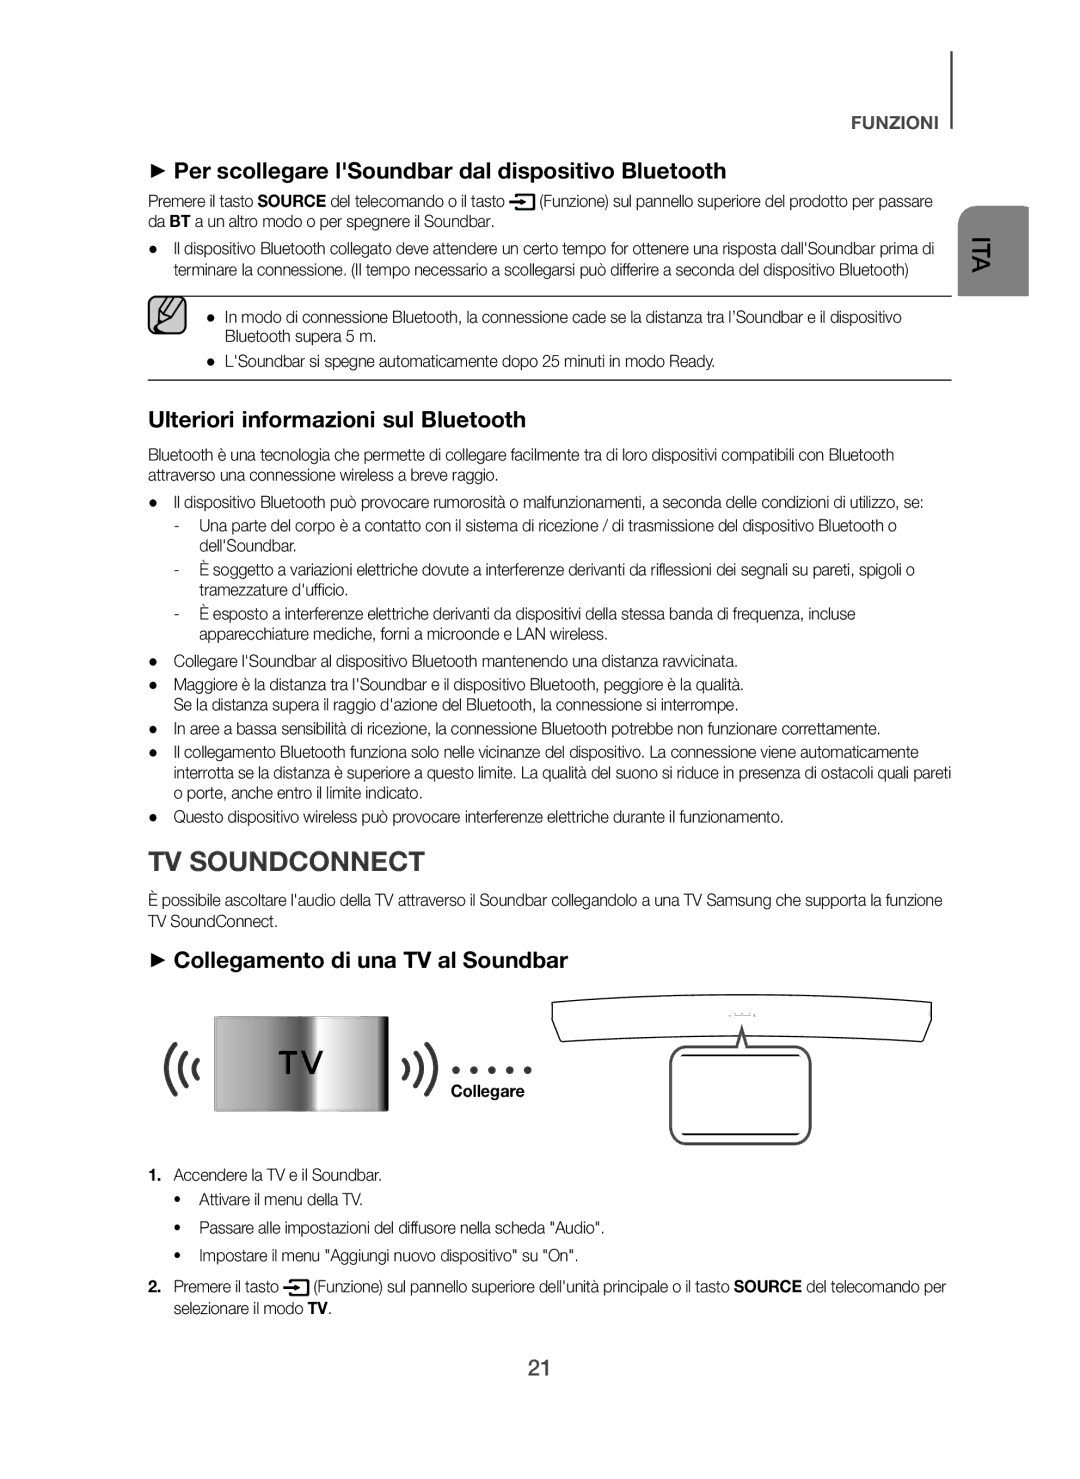 Samsung HW-H7501/ZF + Per scollegare lSoundbar dal dispositivo Bluetooth, Ulteriori informazioni sul Bluetooth, Collegare 